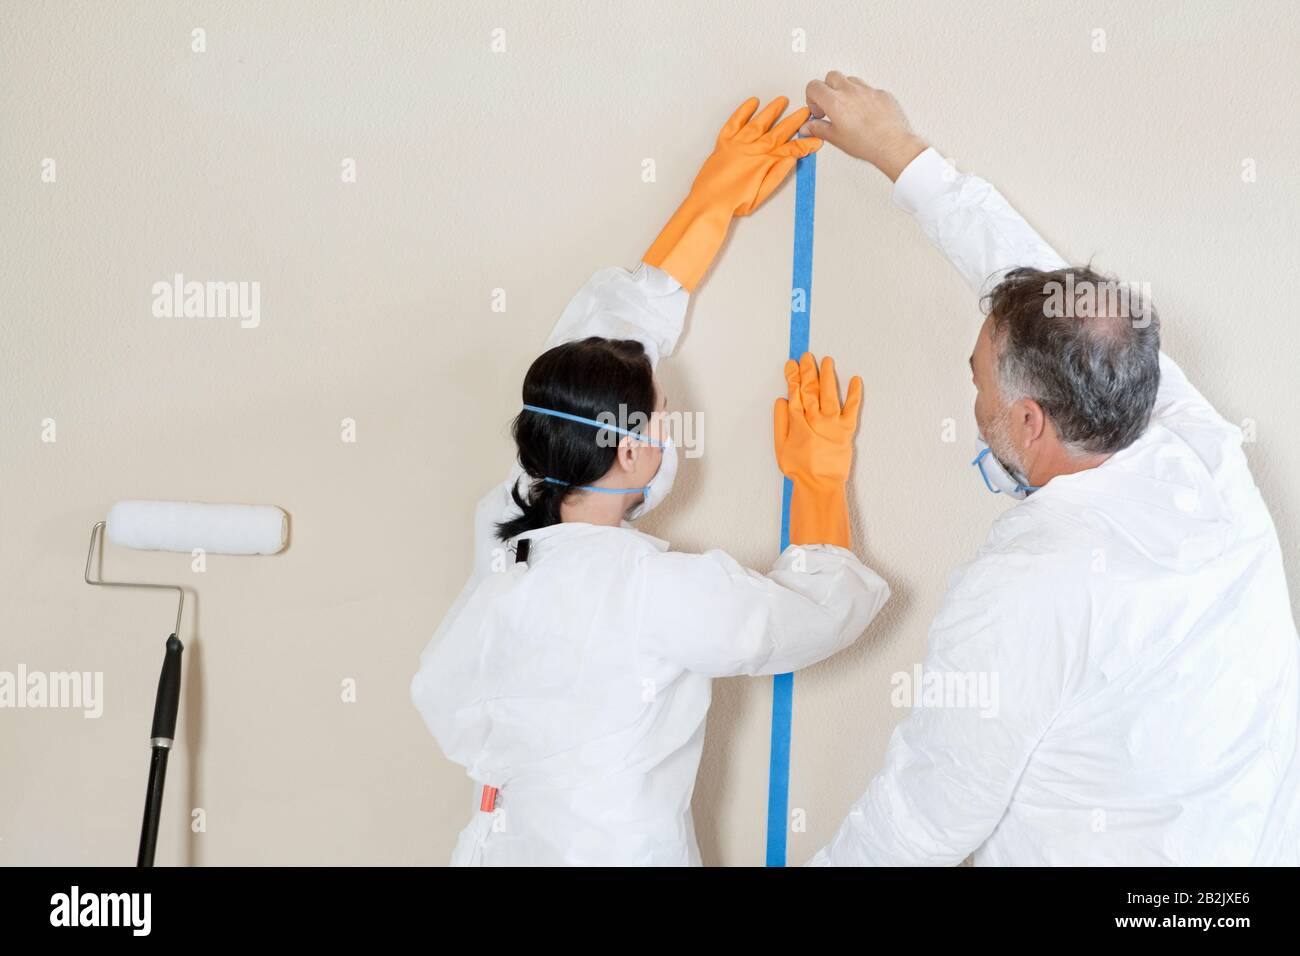 Rückansicht von zwei manuellen Mitarbeitern, die die Vorbereitung auf den Lackierraum durchführen Stockfoto